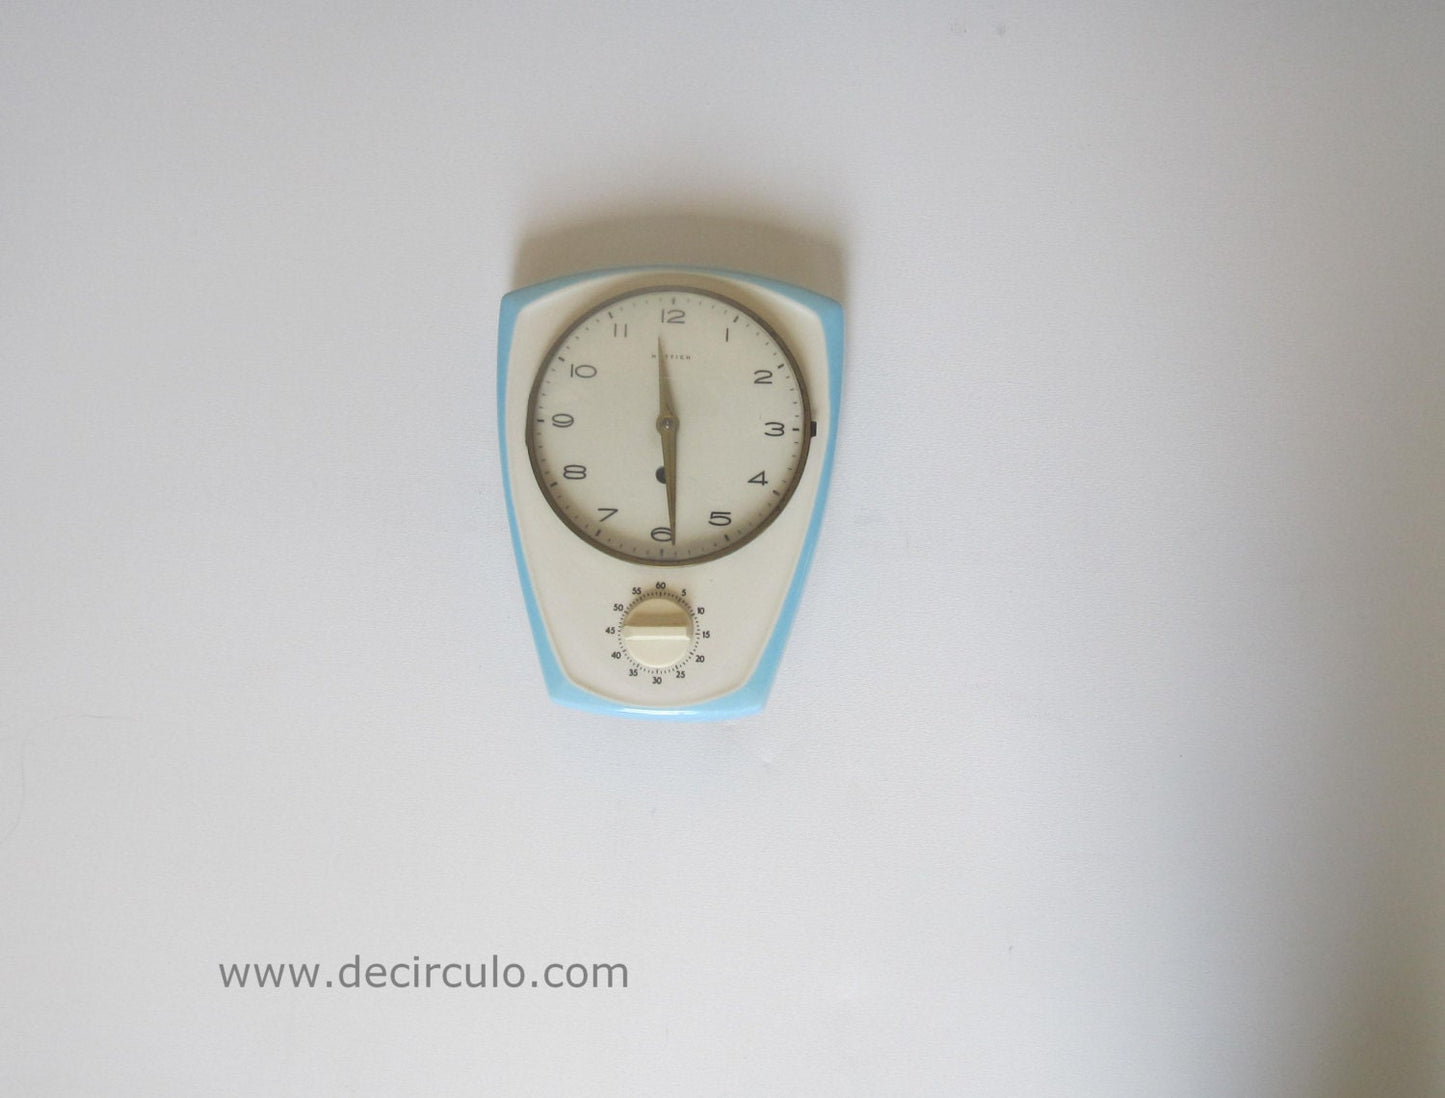 Ceramic Hettich kitchen clockwith timer, porcelain german vintage kichten clock with key